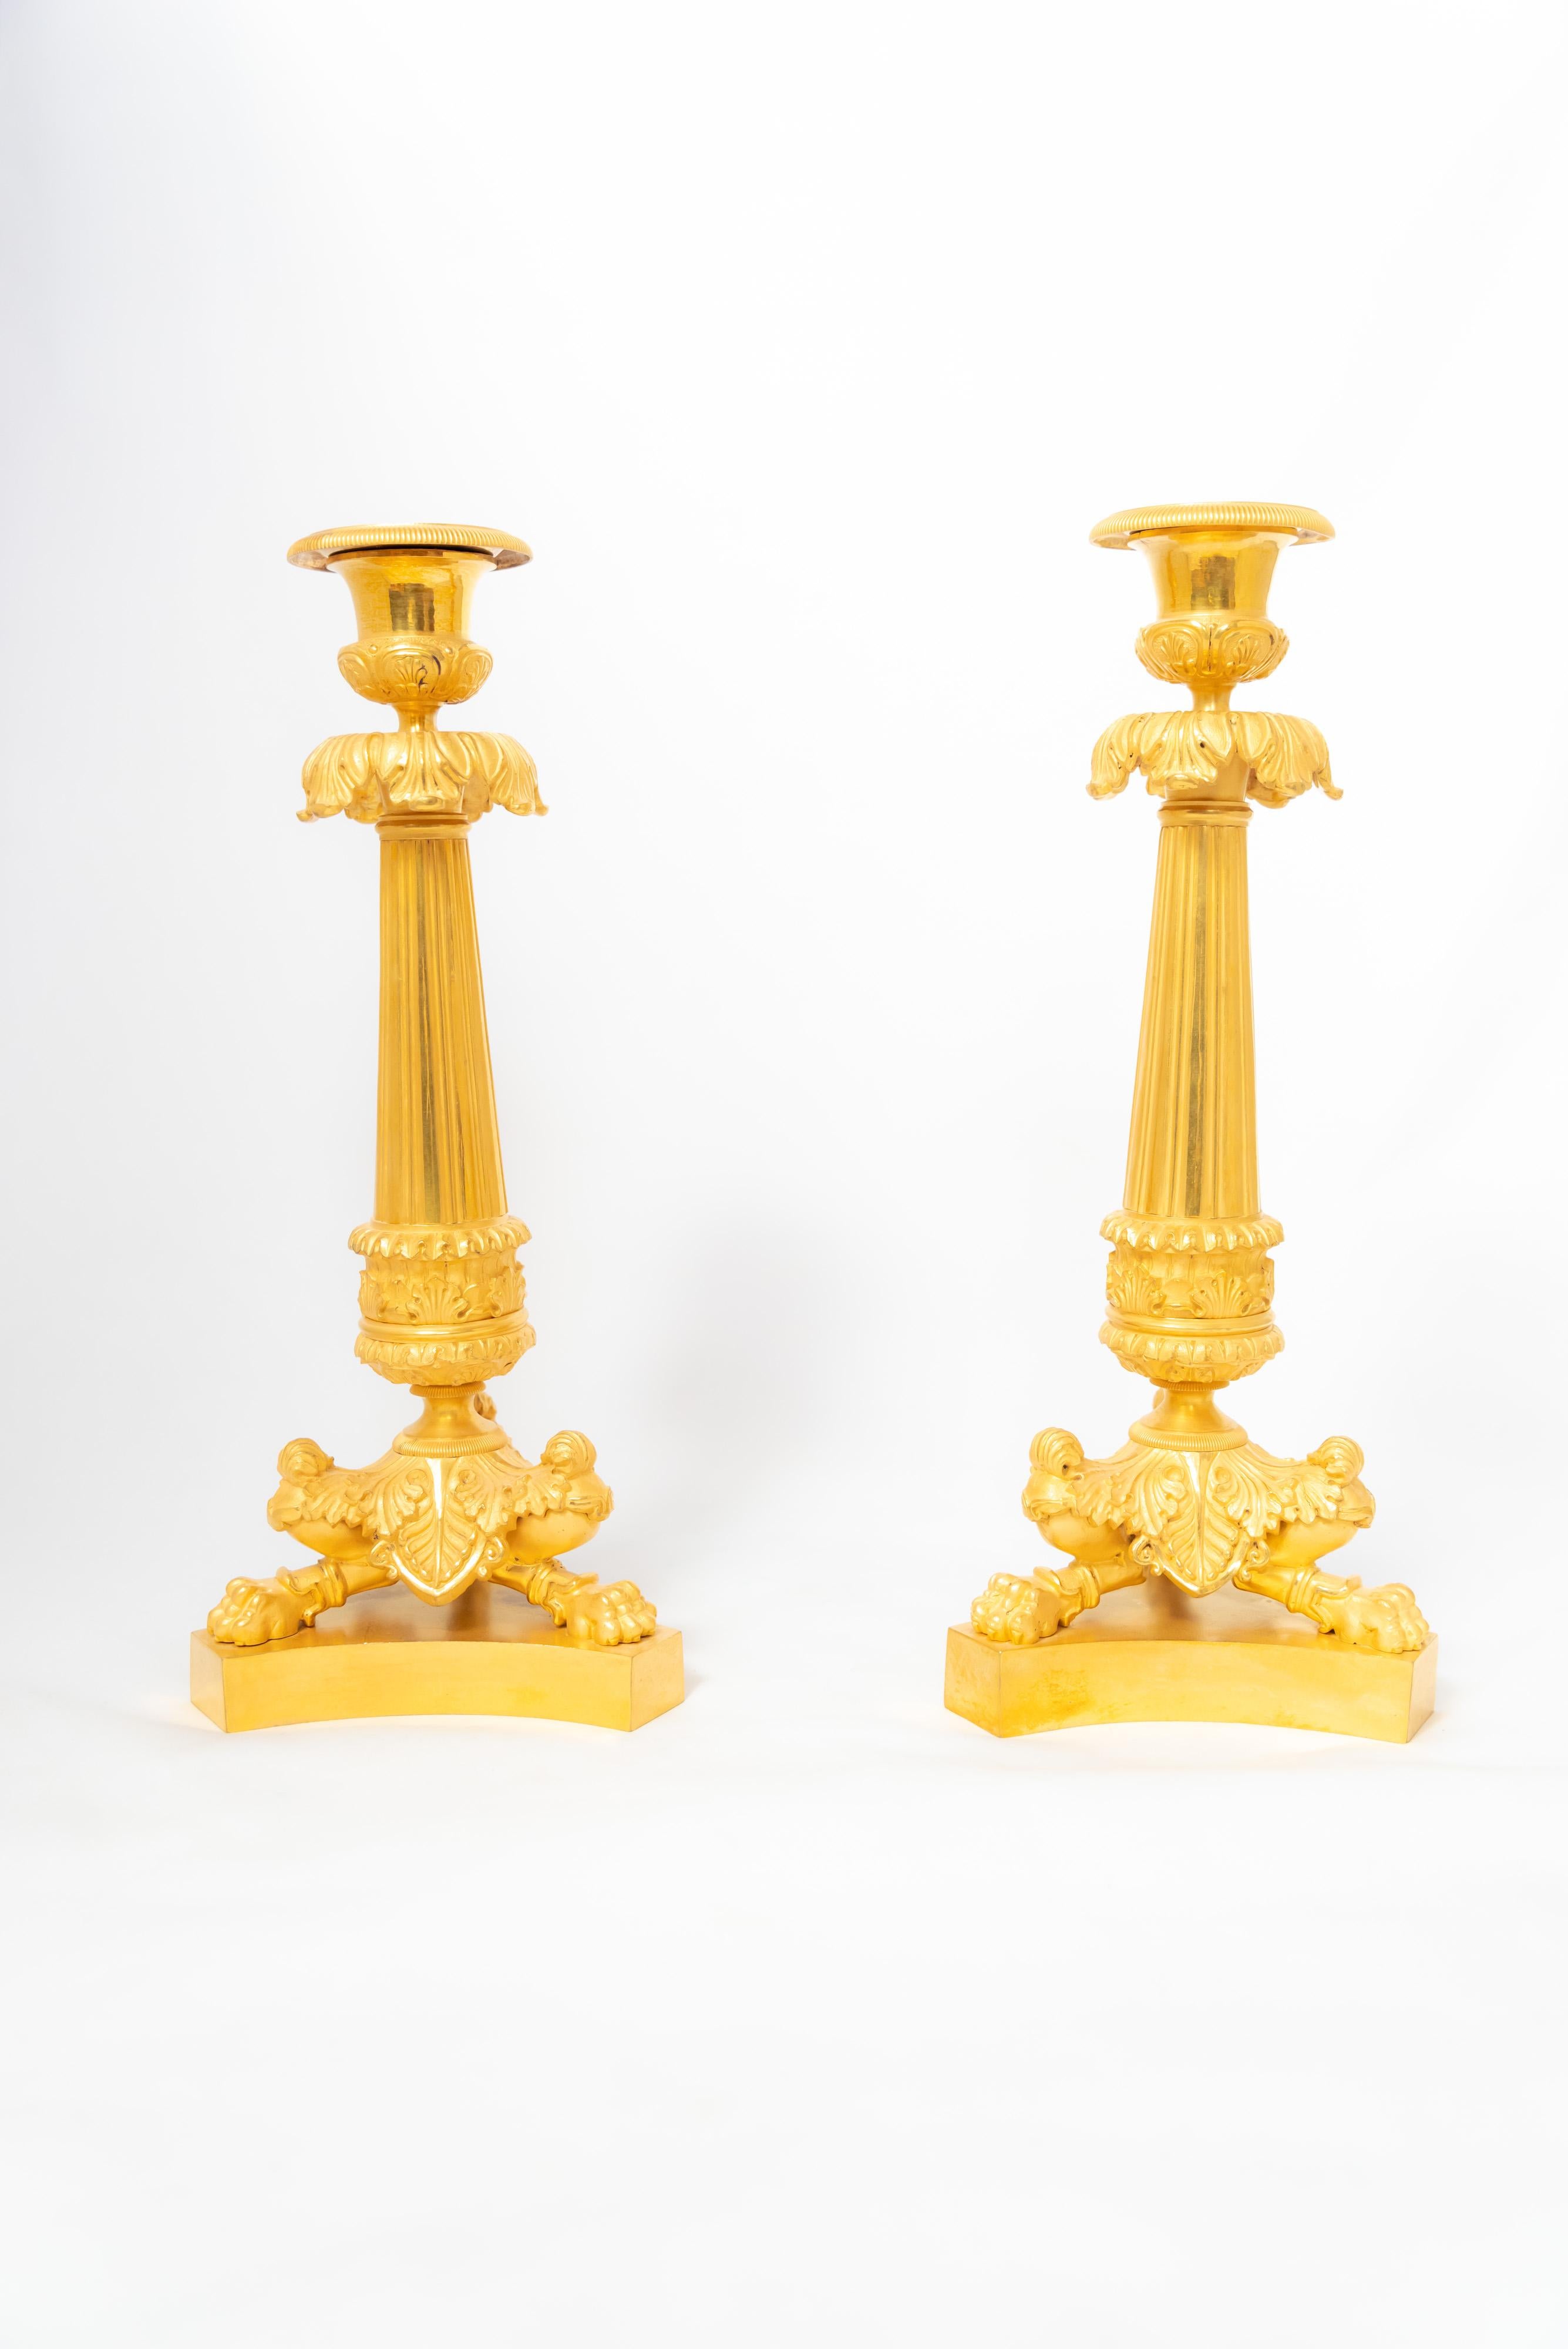 Ein Paar Kerzenhalter aus ziselierter, feuervergoldeter Bronze aus dem französischen Empire oder der frühen Restaurationszeit. Das Paar, das die in der napoleonischen Epoche so beliebte klassizistische Ikonographie verkörpert, besteht aus einem